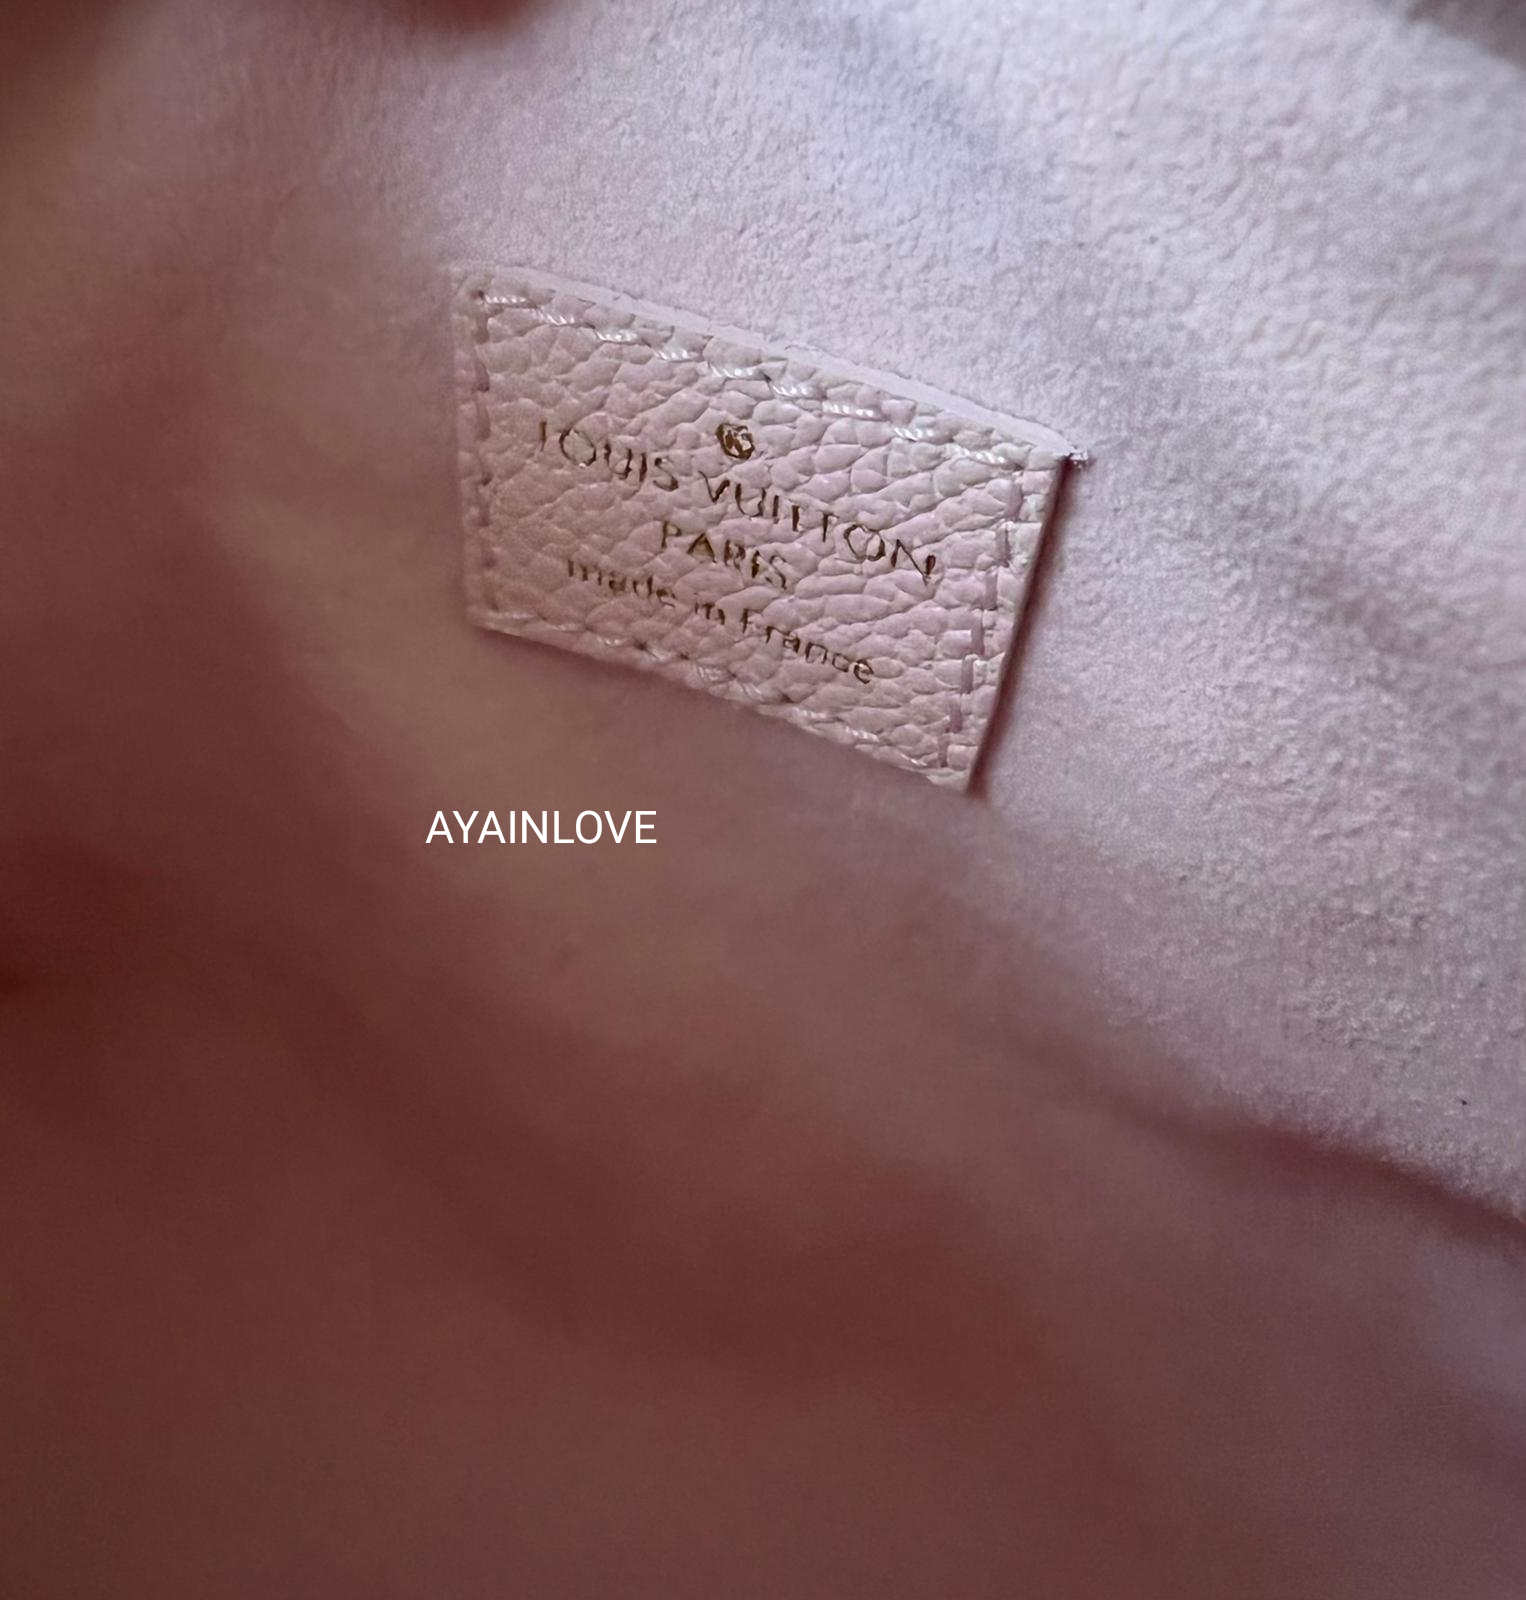 Louis Vuitton Pink Leather Monogram Empreinte Stardust Nano Speedy Bandouliere 92lk6